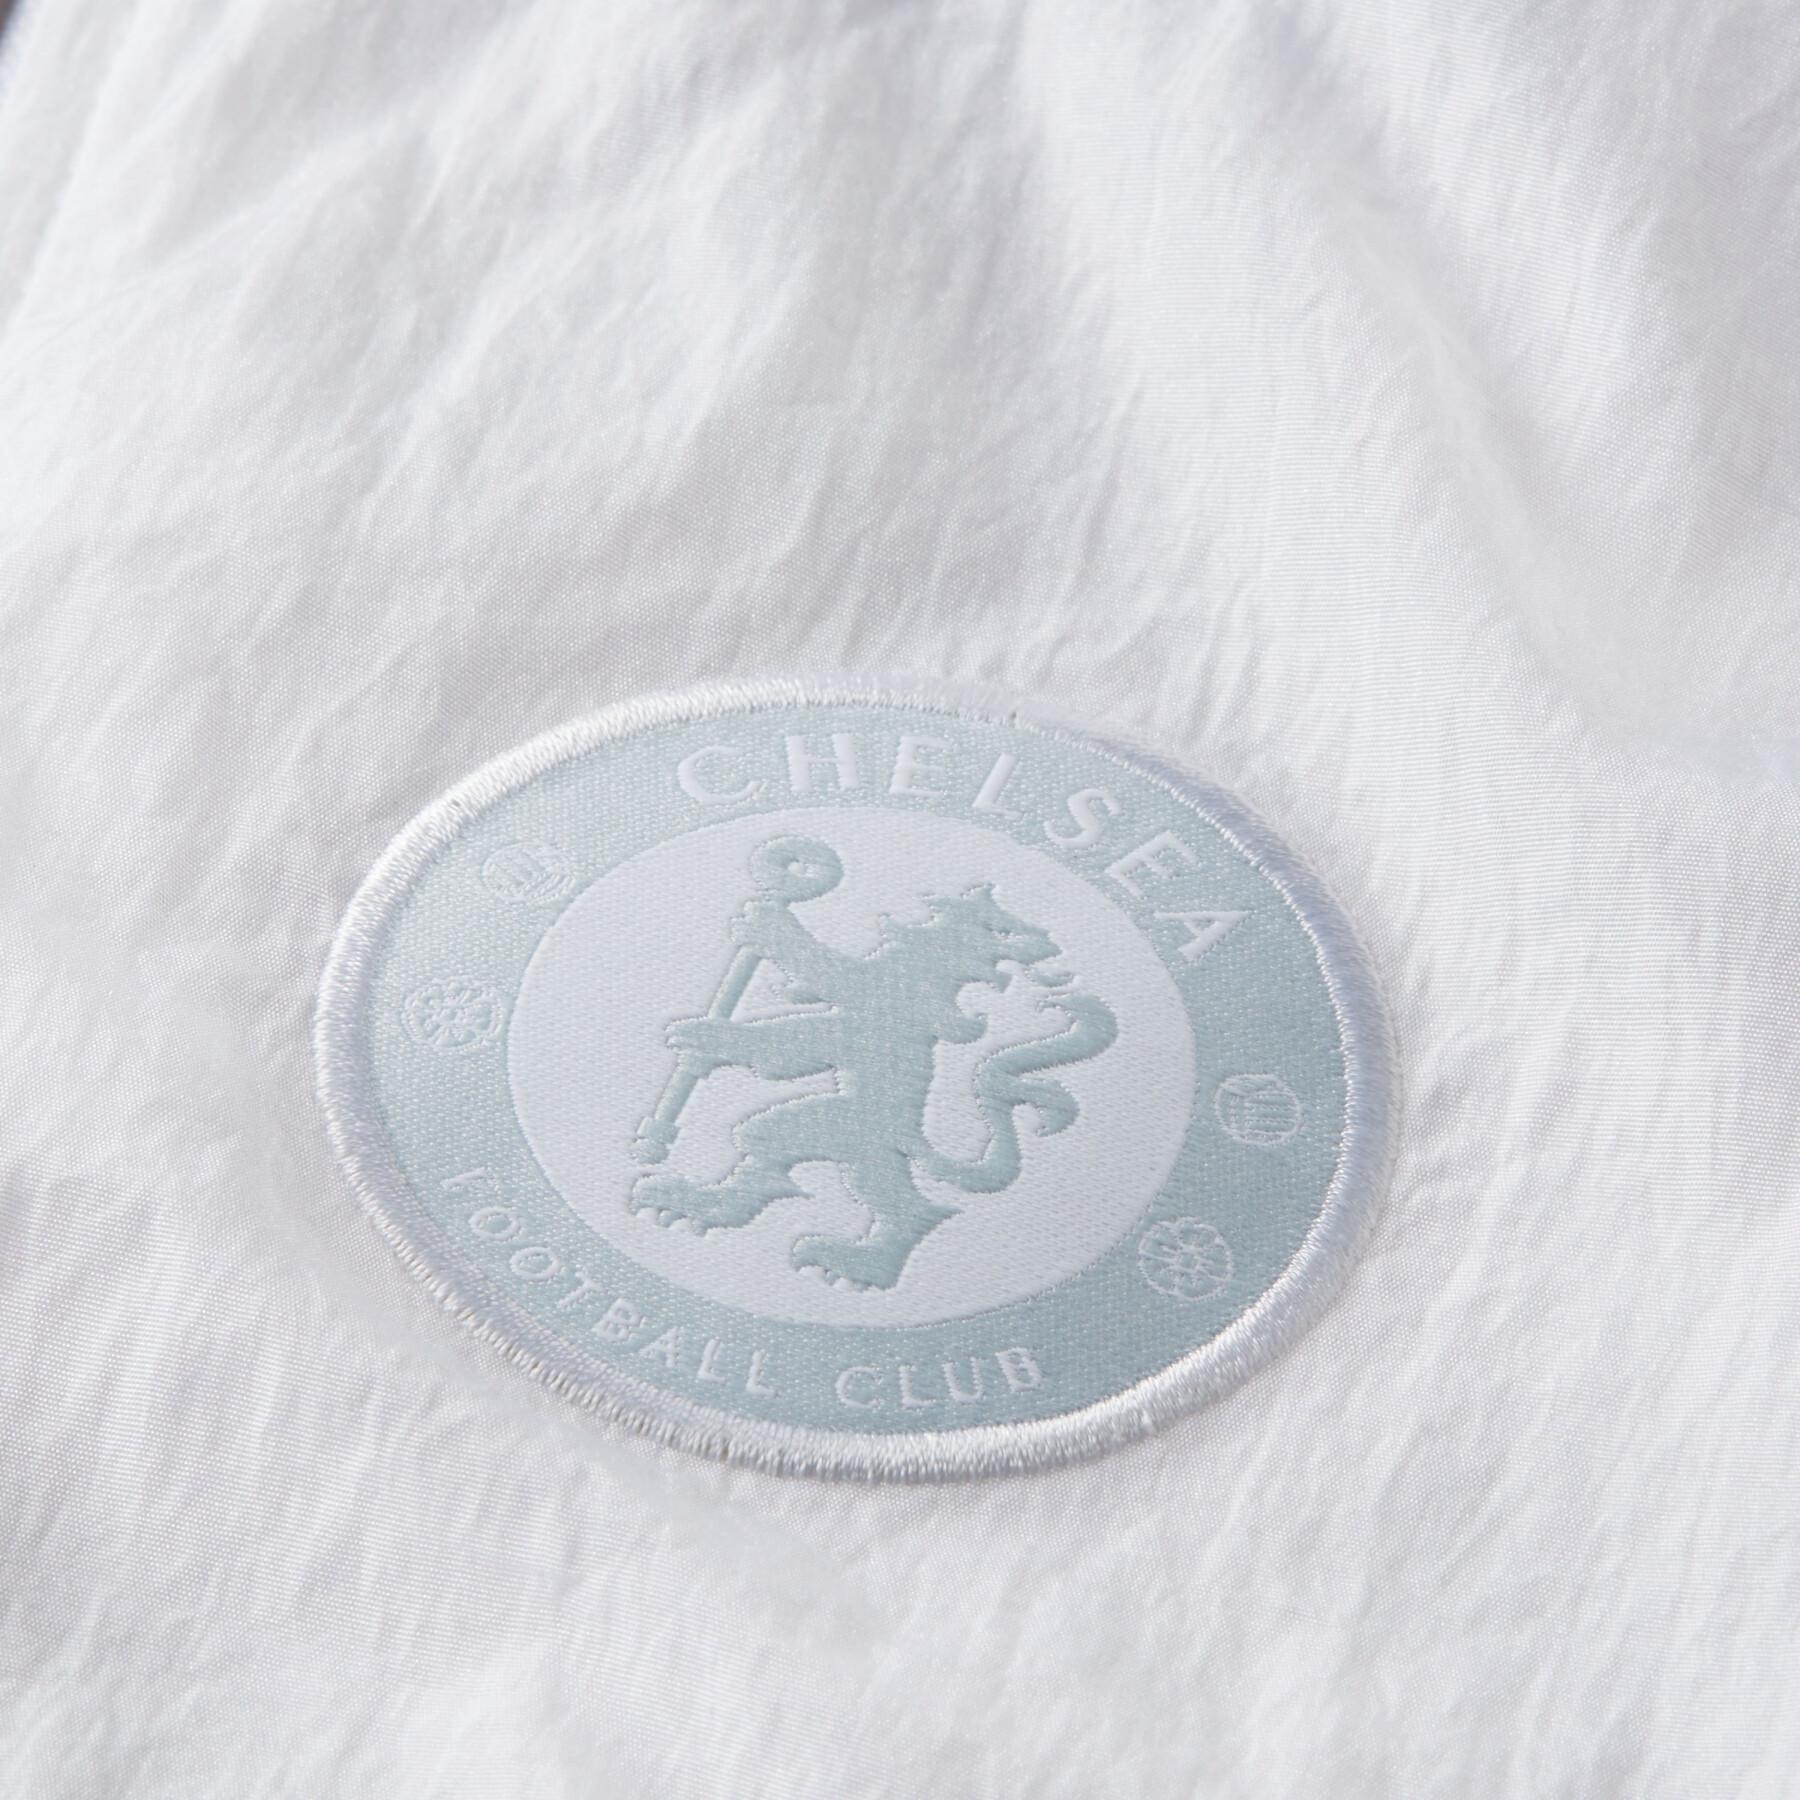 Chelsea nylon tracksuit jacket 2020/21